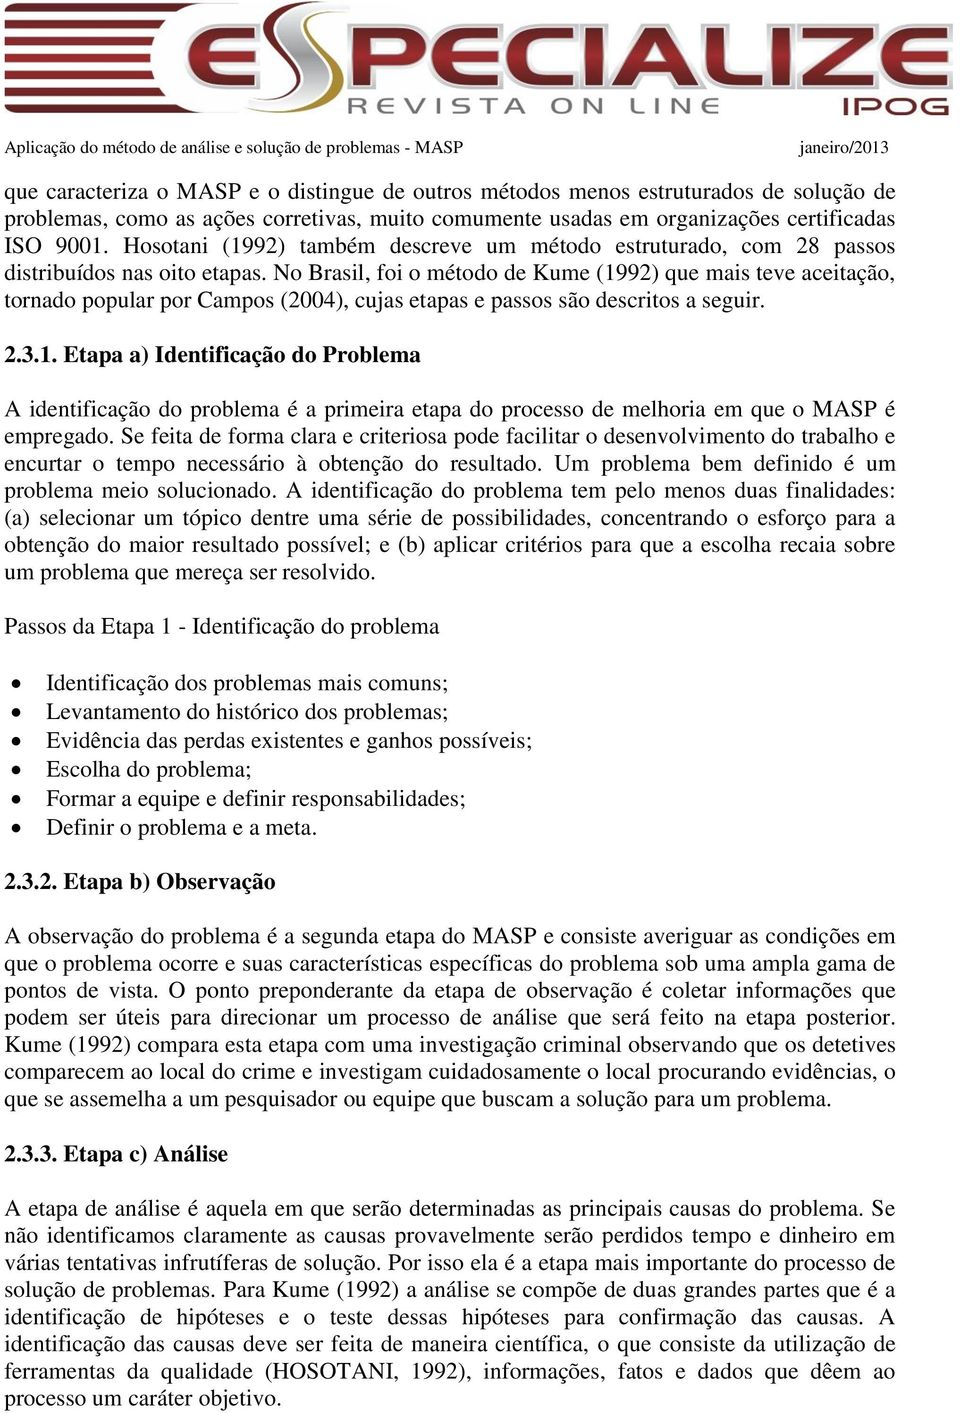 No Brasil, foi o método de Kume (1992) que mais teve aceitação, tornado popular por Campos (2004), cujas etapas e passos são descritos a seguir. 2.3.1. Etapa a) Identificação do Problema A identificação do problema é a primeira etapa do processo de melhoria em que o MASP é empregado.